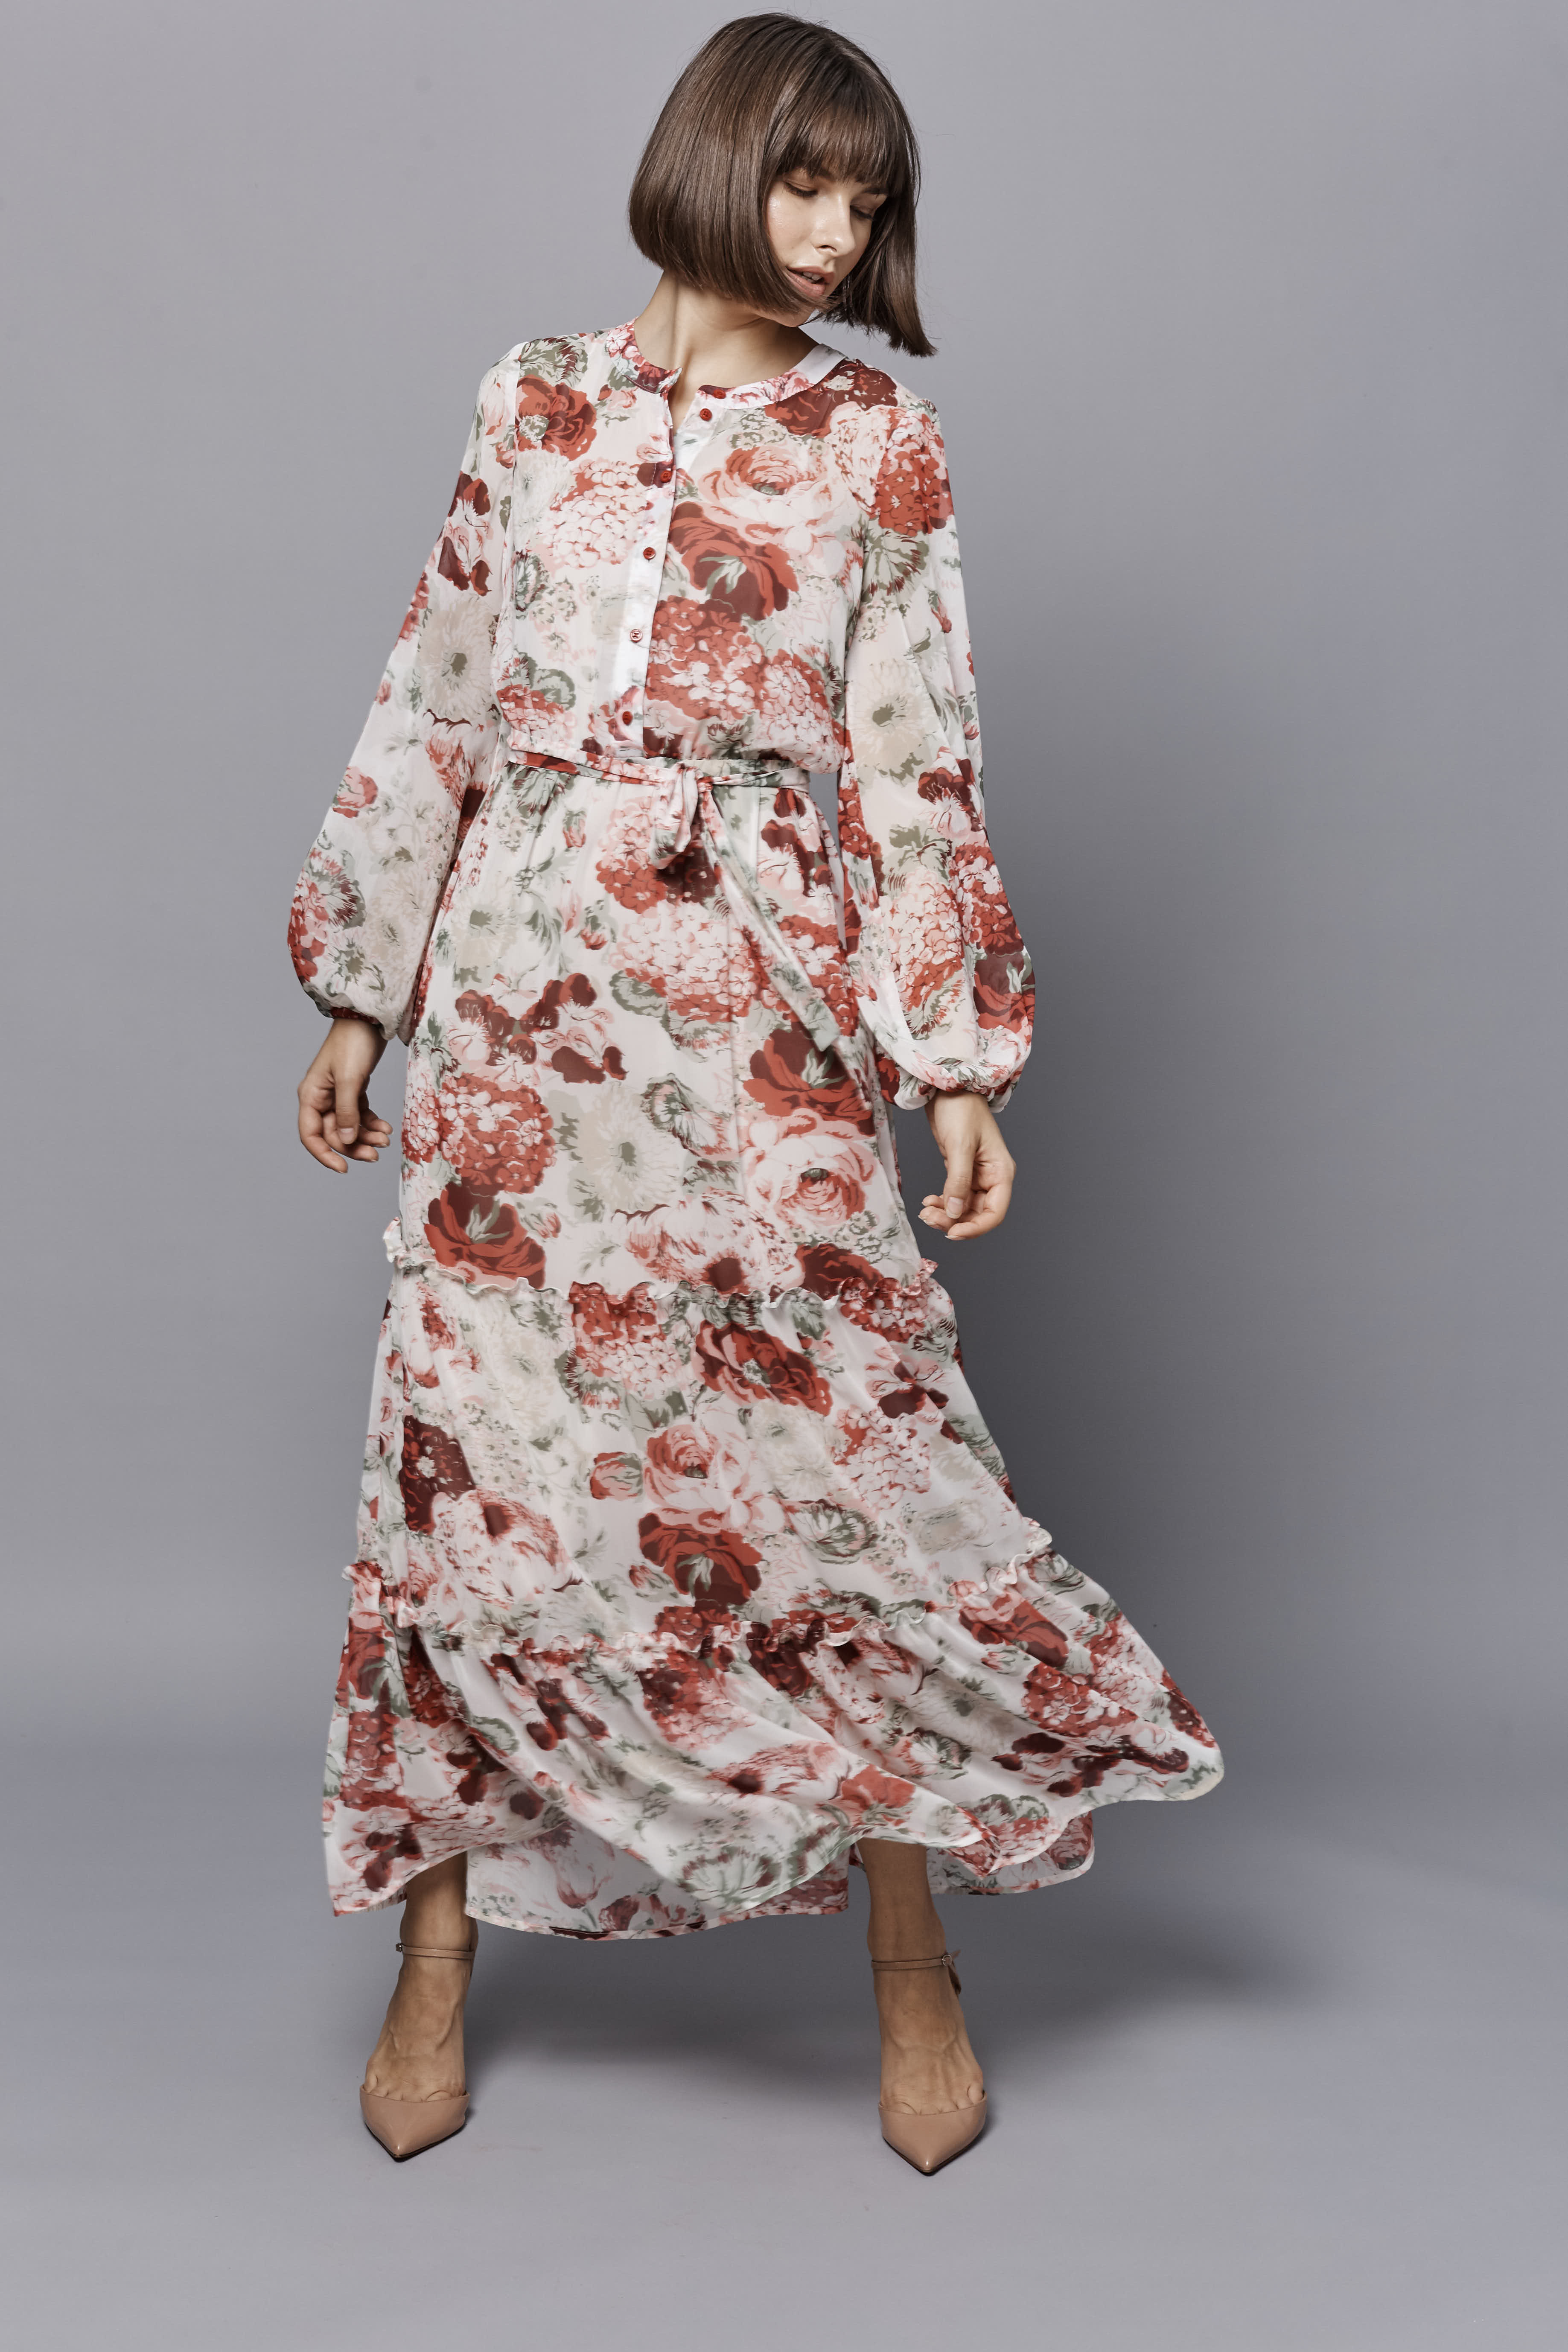 Сукня міді з принтом "червоні квіти" на гудзиках, фото 2